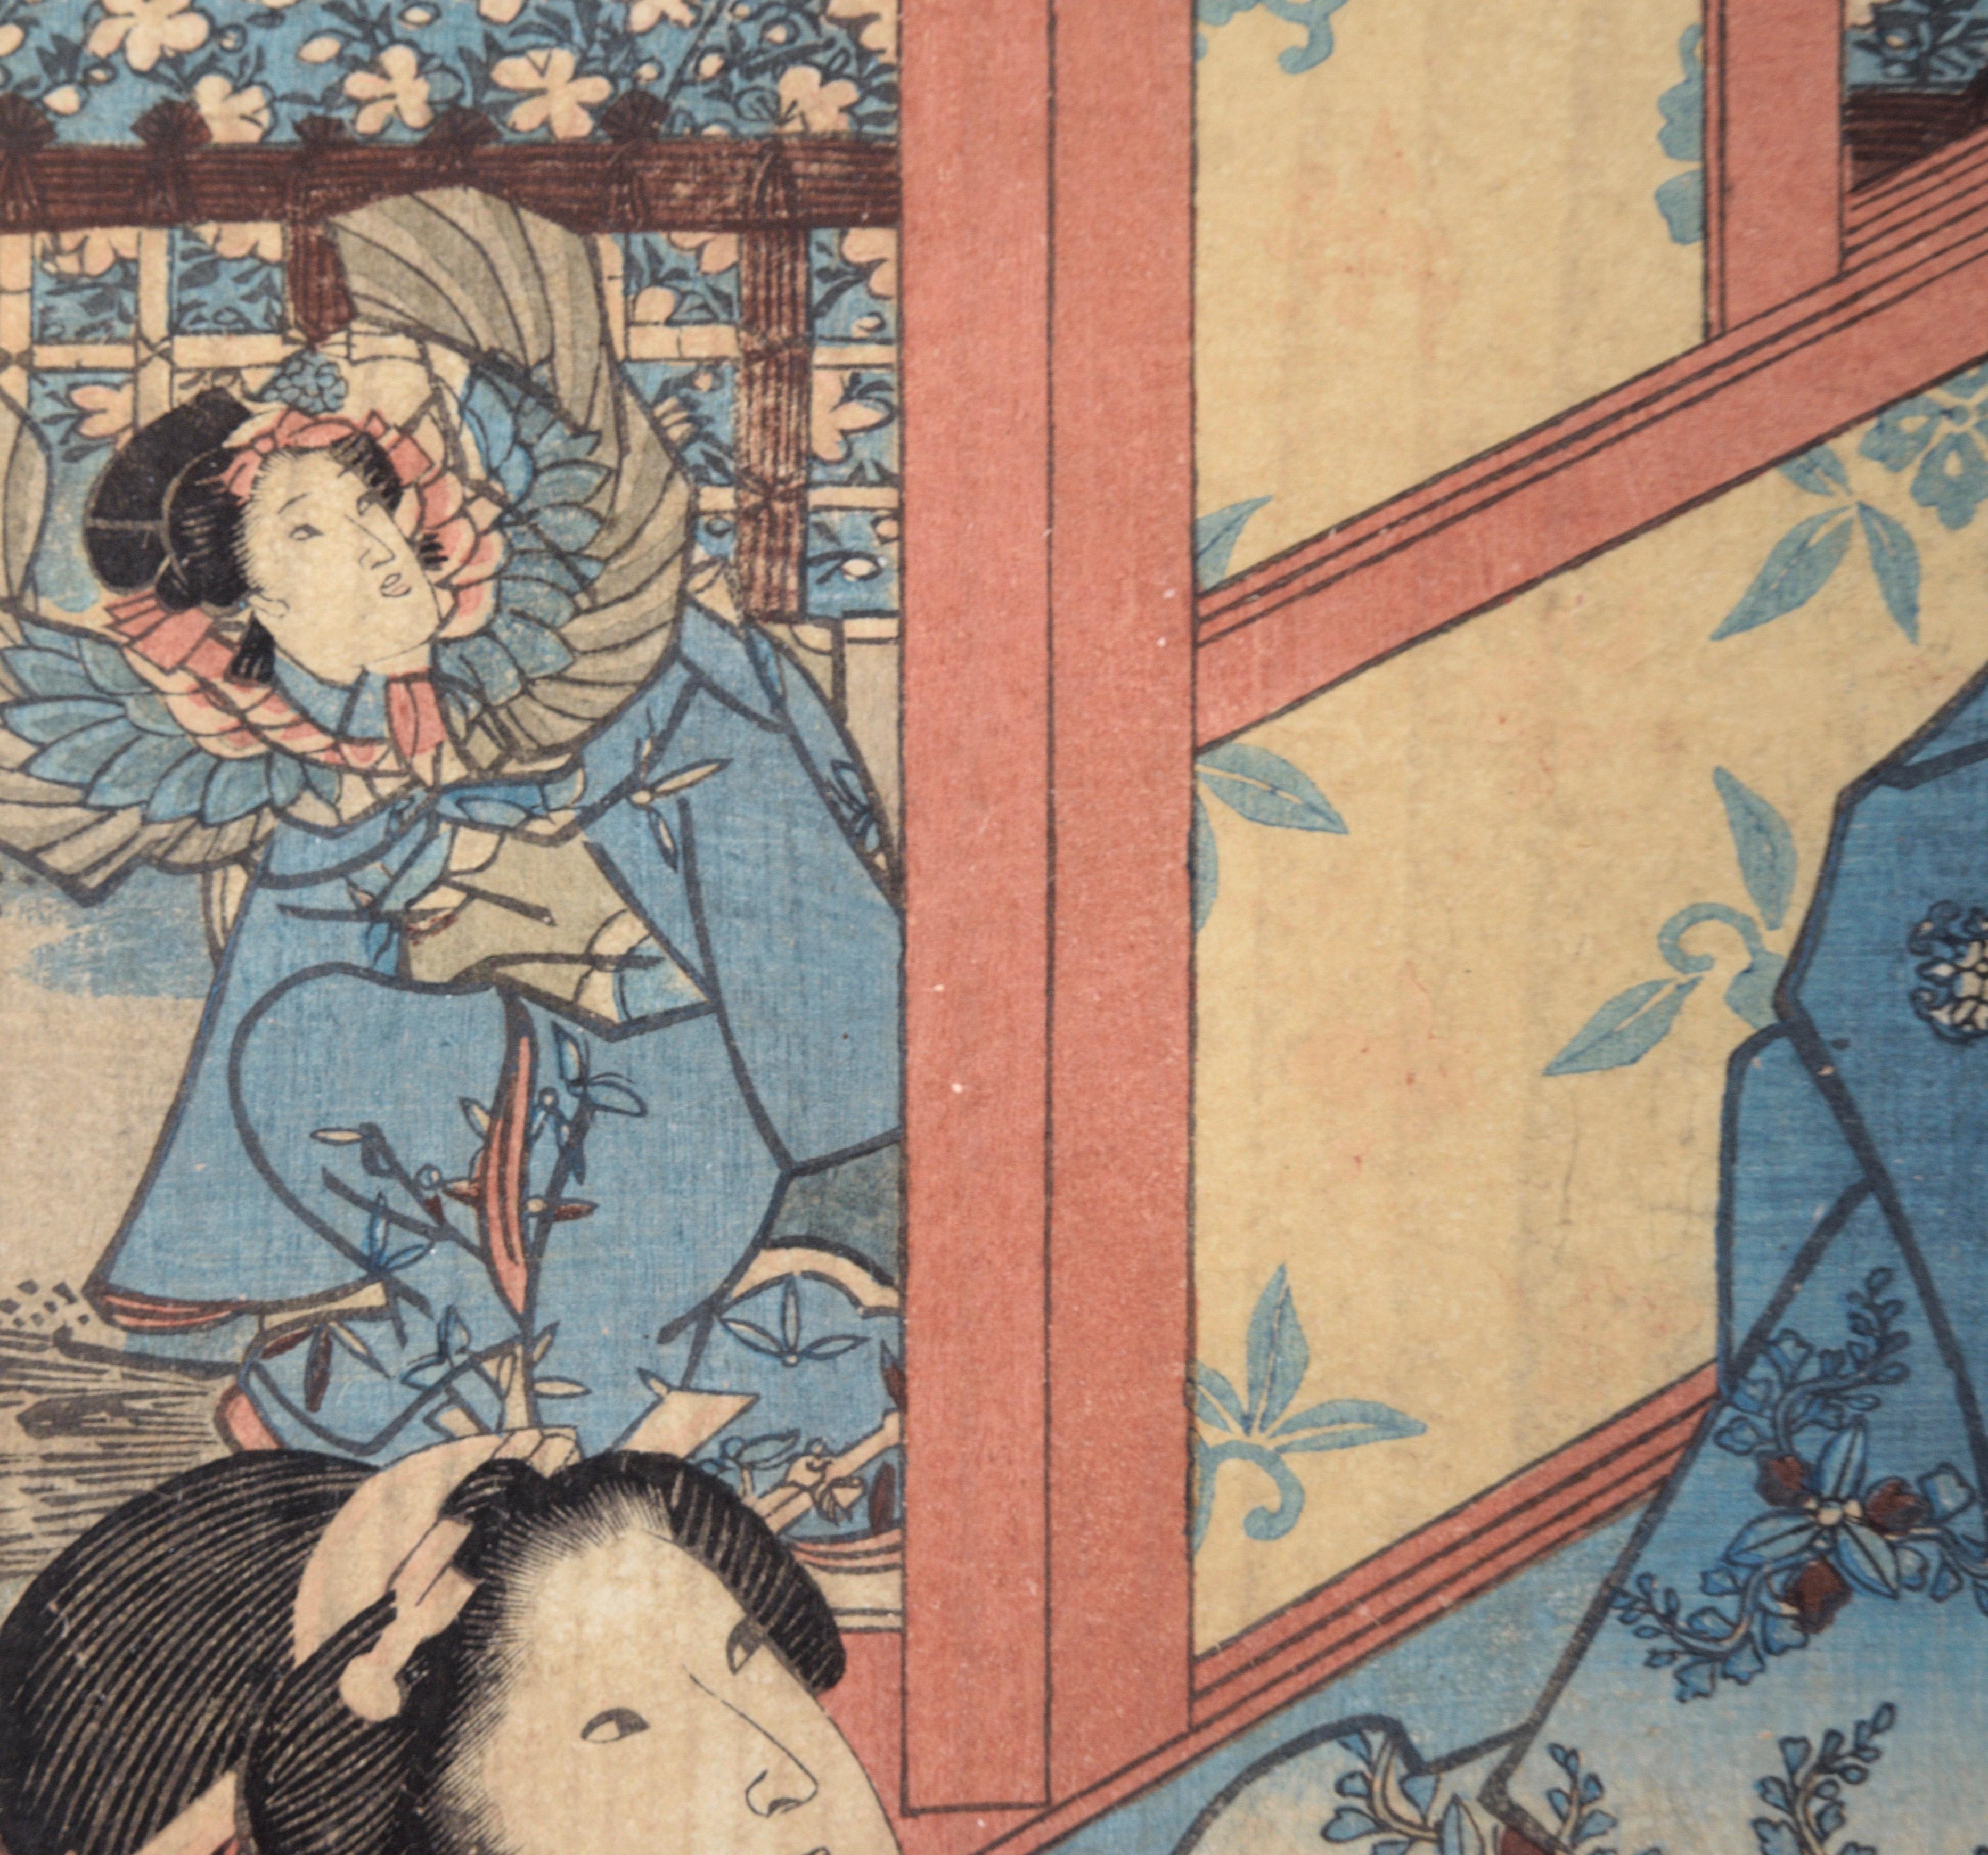 Les quatre saisons : Printemps - Triptyque de bois japonais à l'encre sur papier

Scène colorée de kabuki par Utagawa Kuniteru (Japonais, actif entre 1818 et 1860). Séduisante scène du 